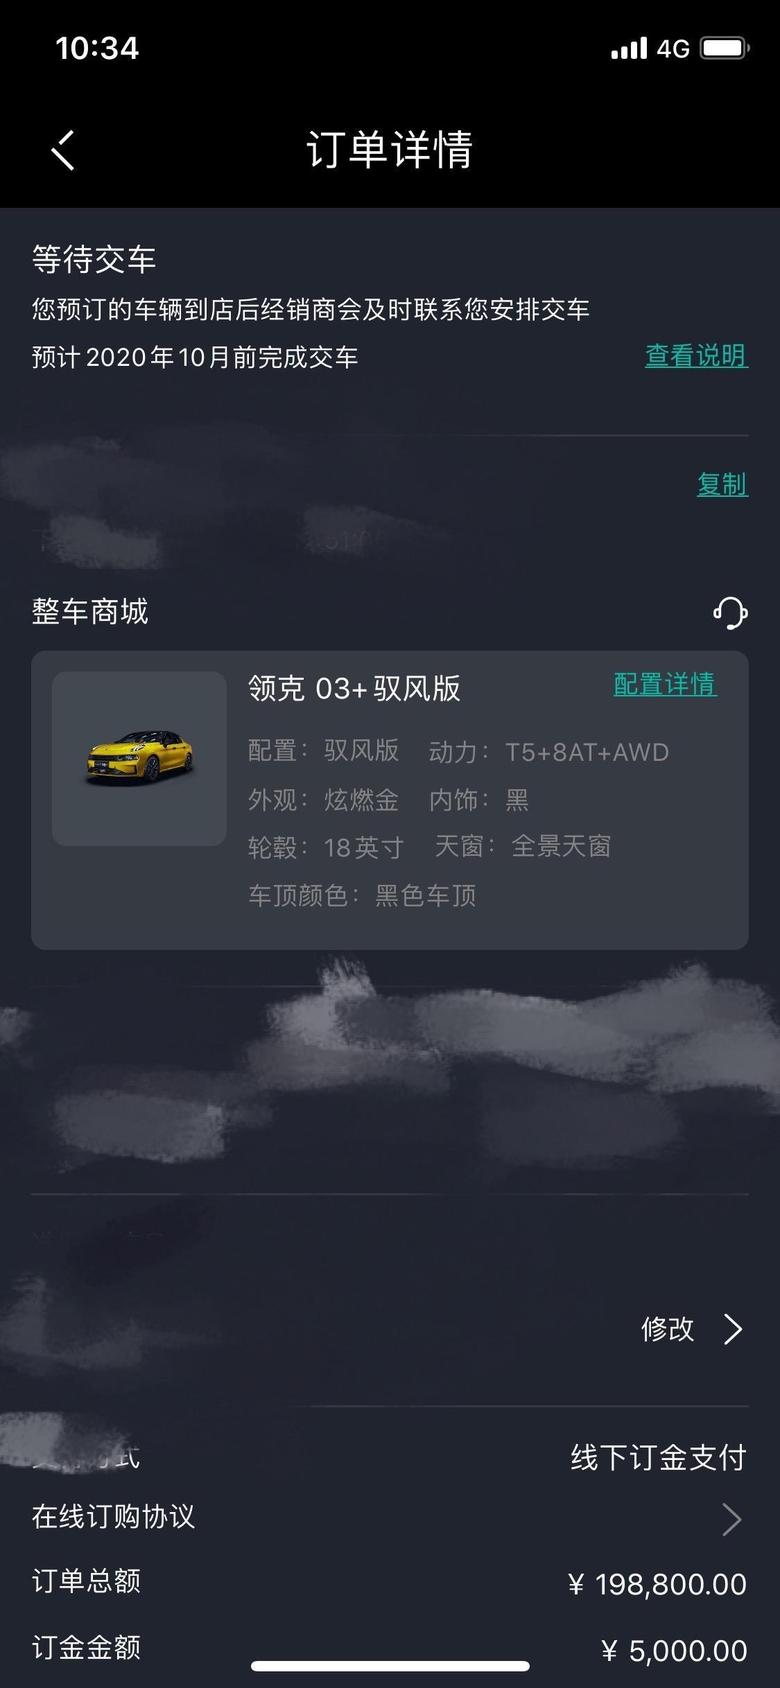 领克03 想请问广州周边03+提车时间一般要多久啊，我订单显示是10月前，这个准吗？